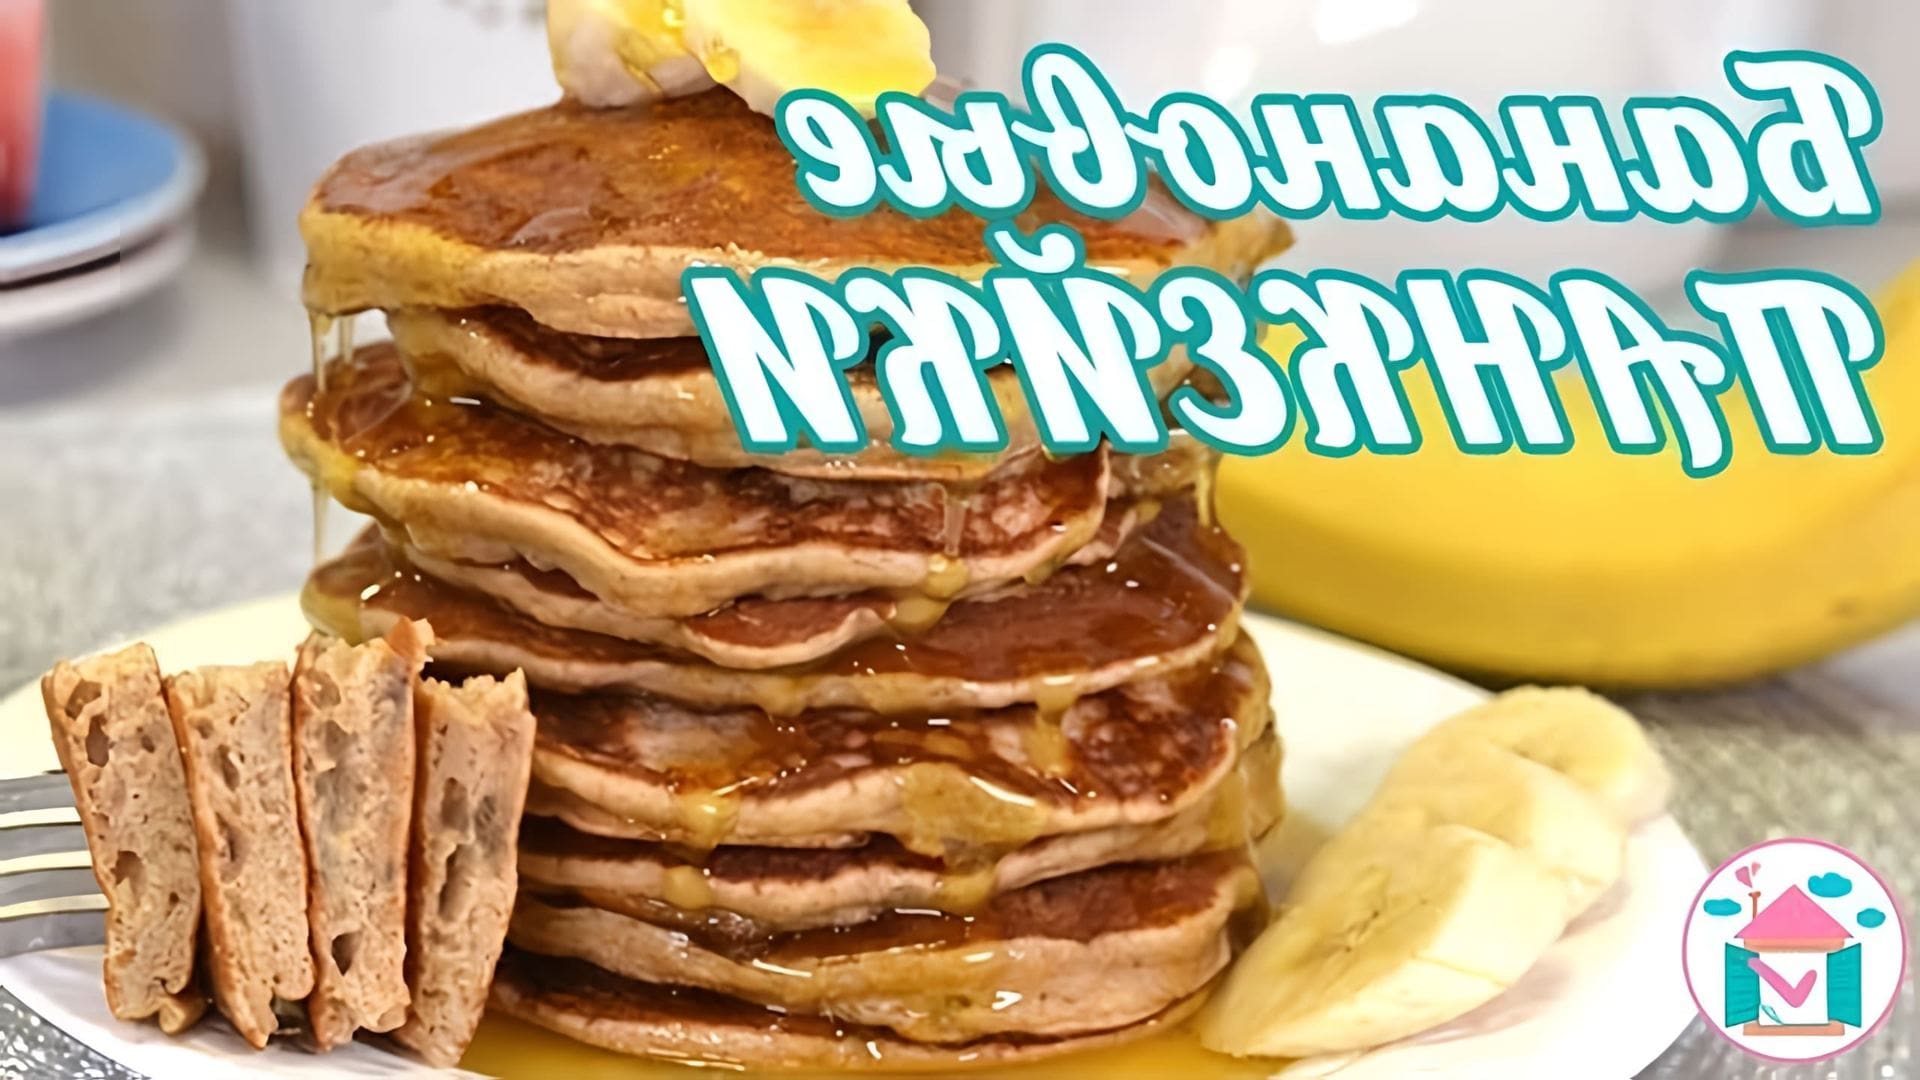 В этом видео демонстрируется рецепт приготовления низкокалорийных банановых панкейков на завтрак